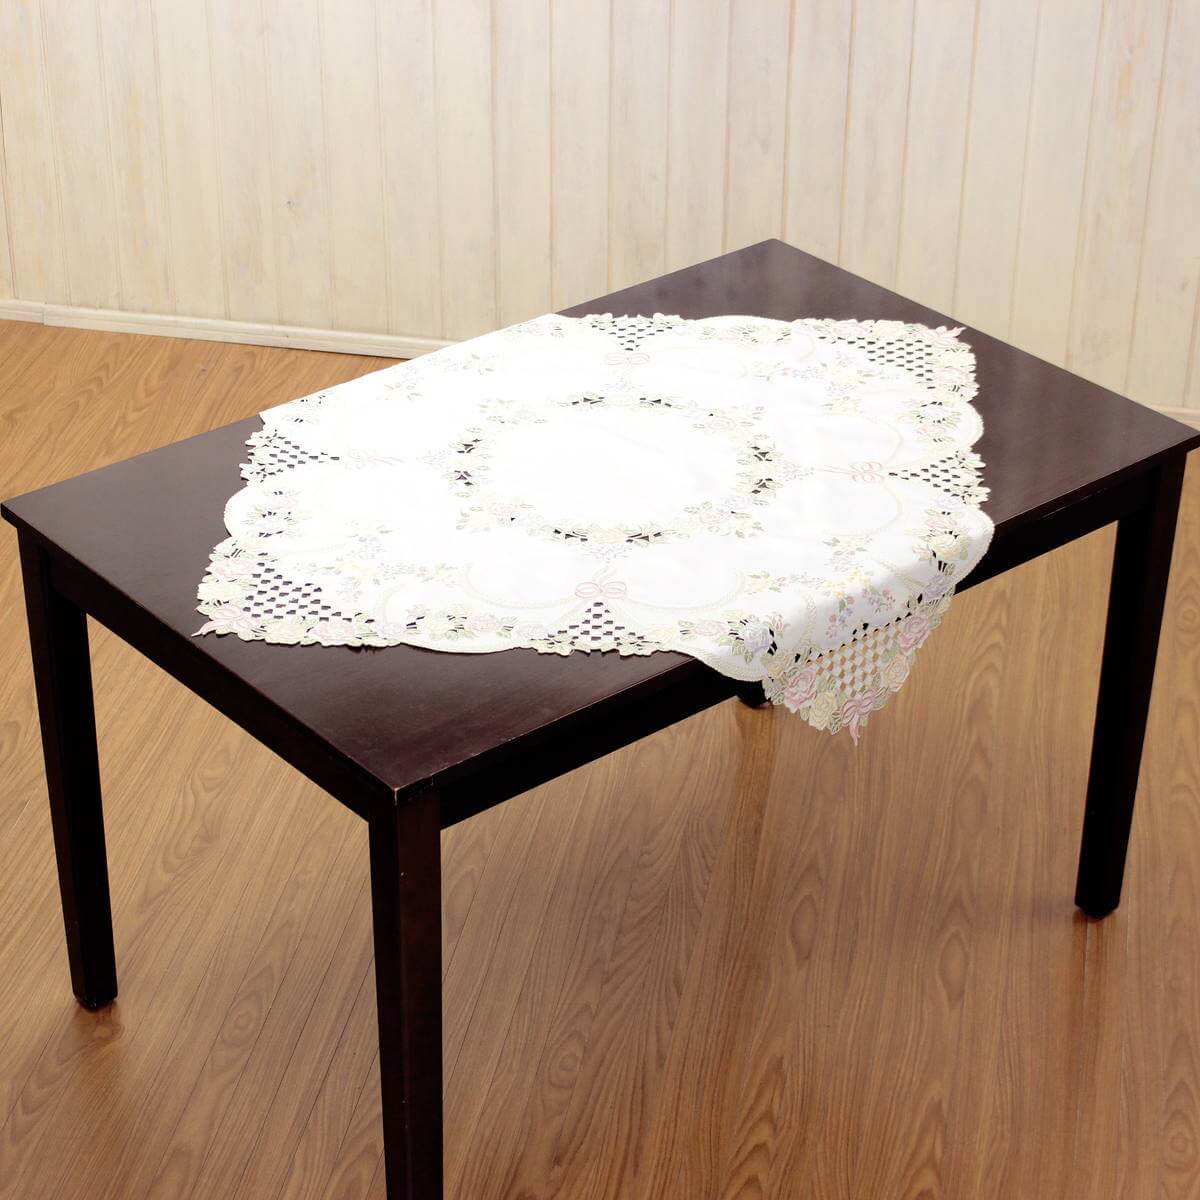 リボン&ローズシリーズのテーブルクロス約85×85cmを75×120cmのテーブルに斜め掛けした一例です。